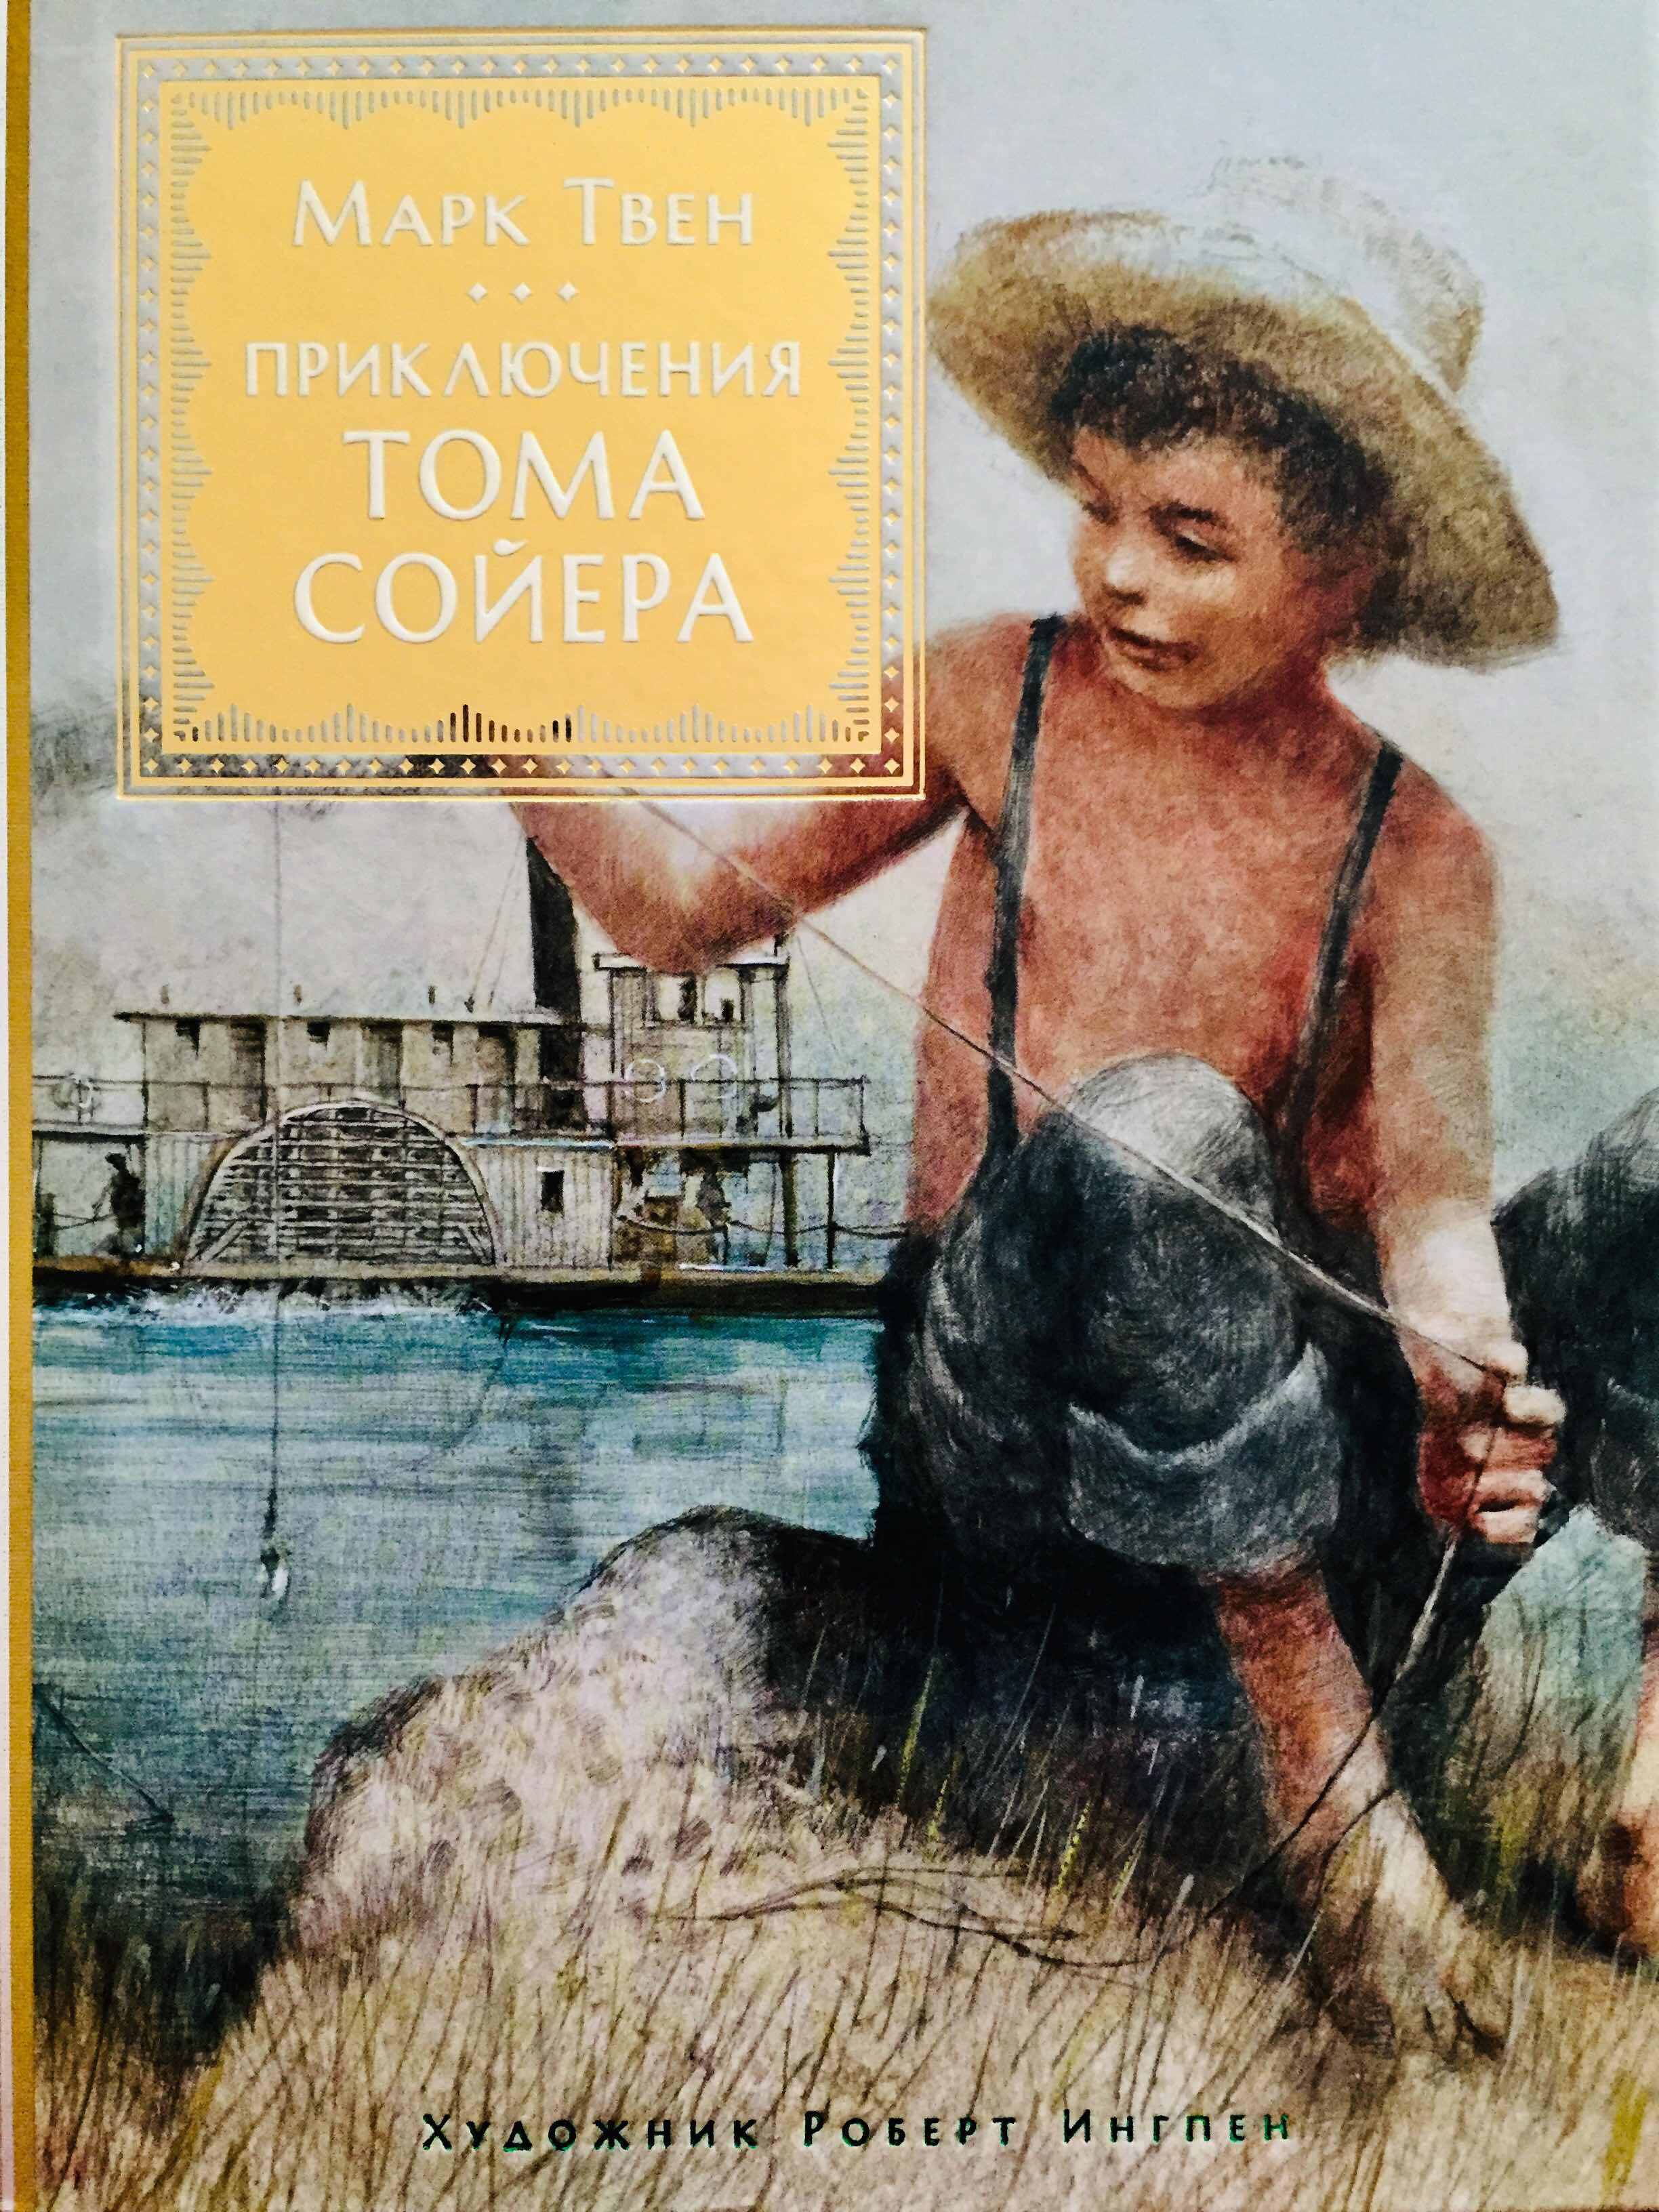 Марка твена приключения тома. Том Сойер обложка книги.